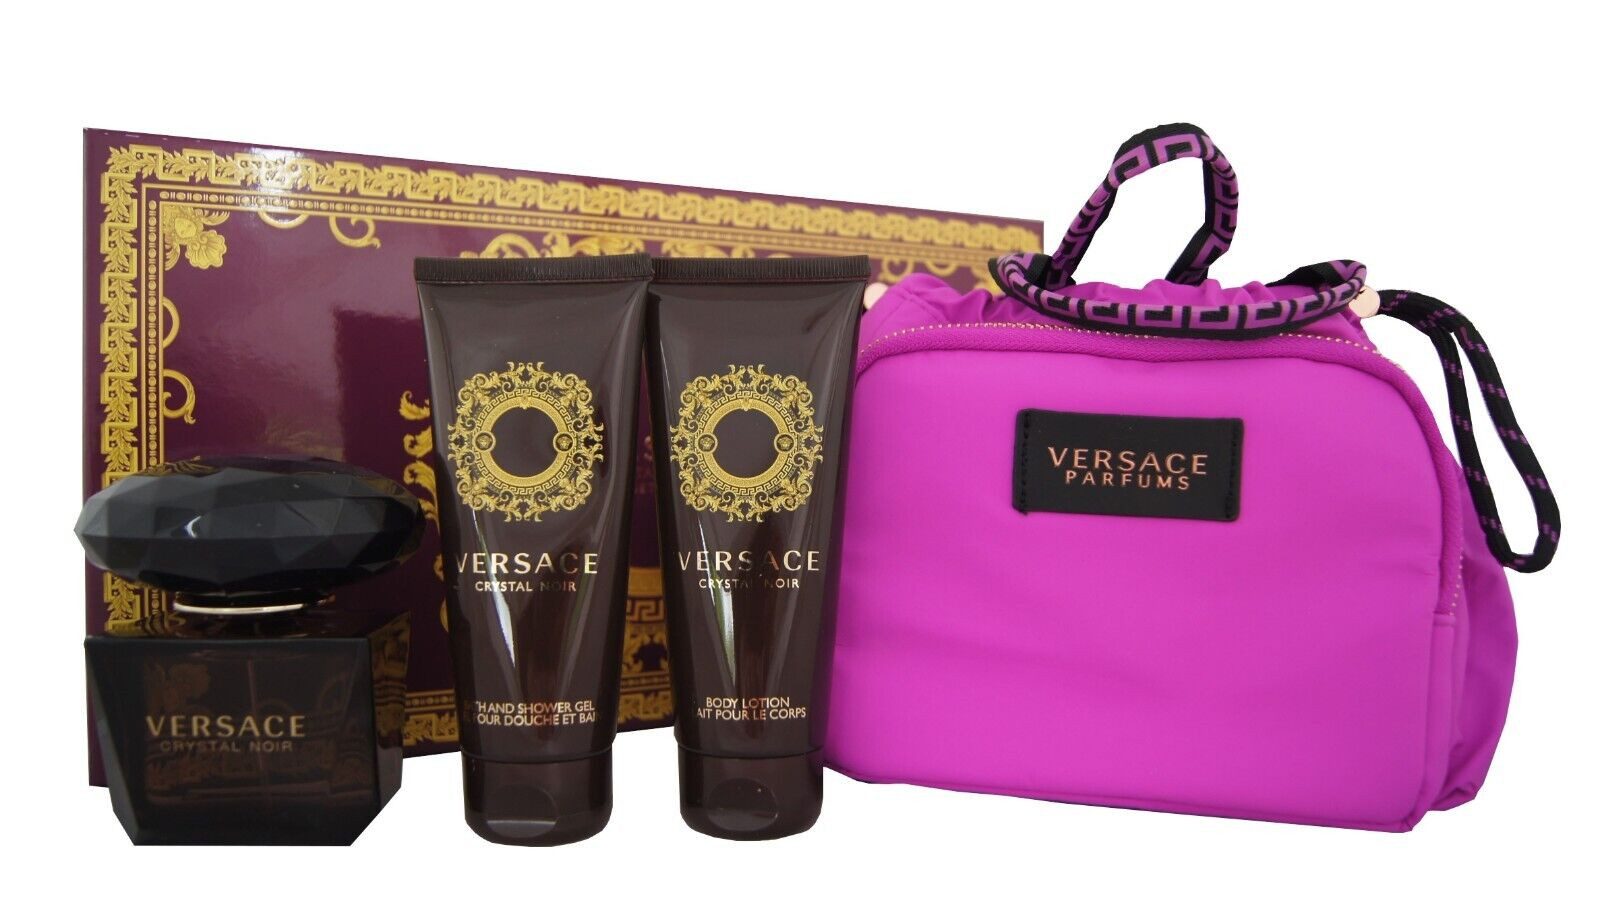 Versace Duft-Set Versace Crystal Noir Eau de Toilette 90ml + SG + Body Lotion & Case, 1-tlg.